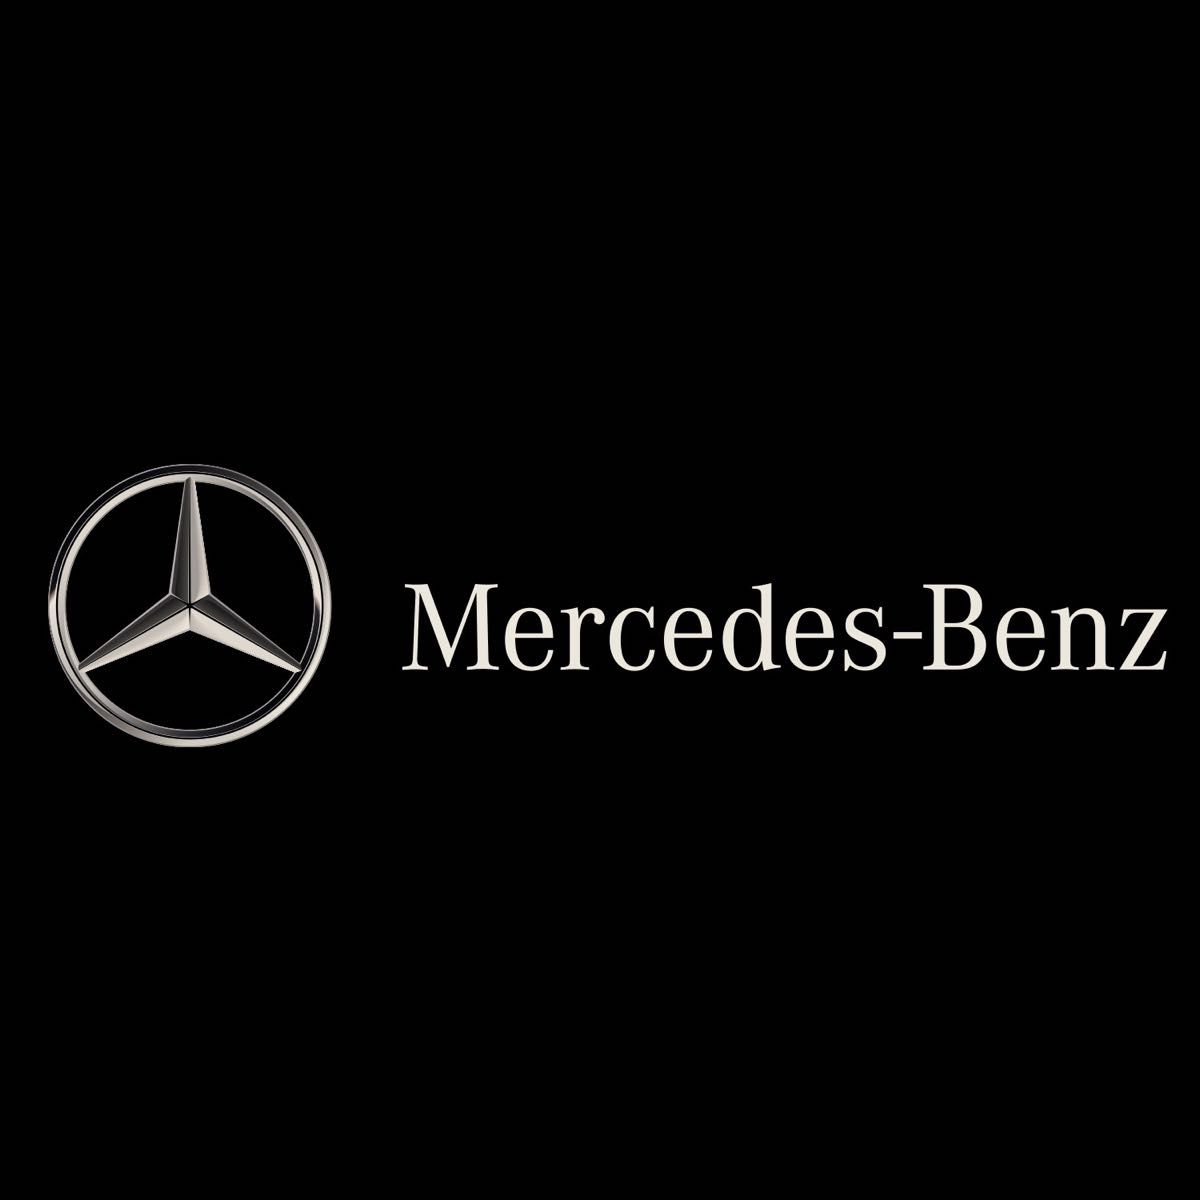 AMG メルセデスベンツ Mercedes Benz アルカンターラ スエード キーホルダー キーチェーン キーリング ブラックk